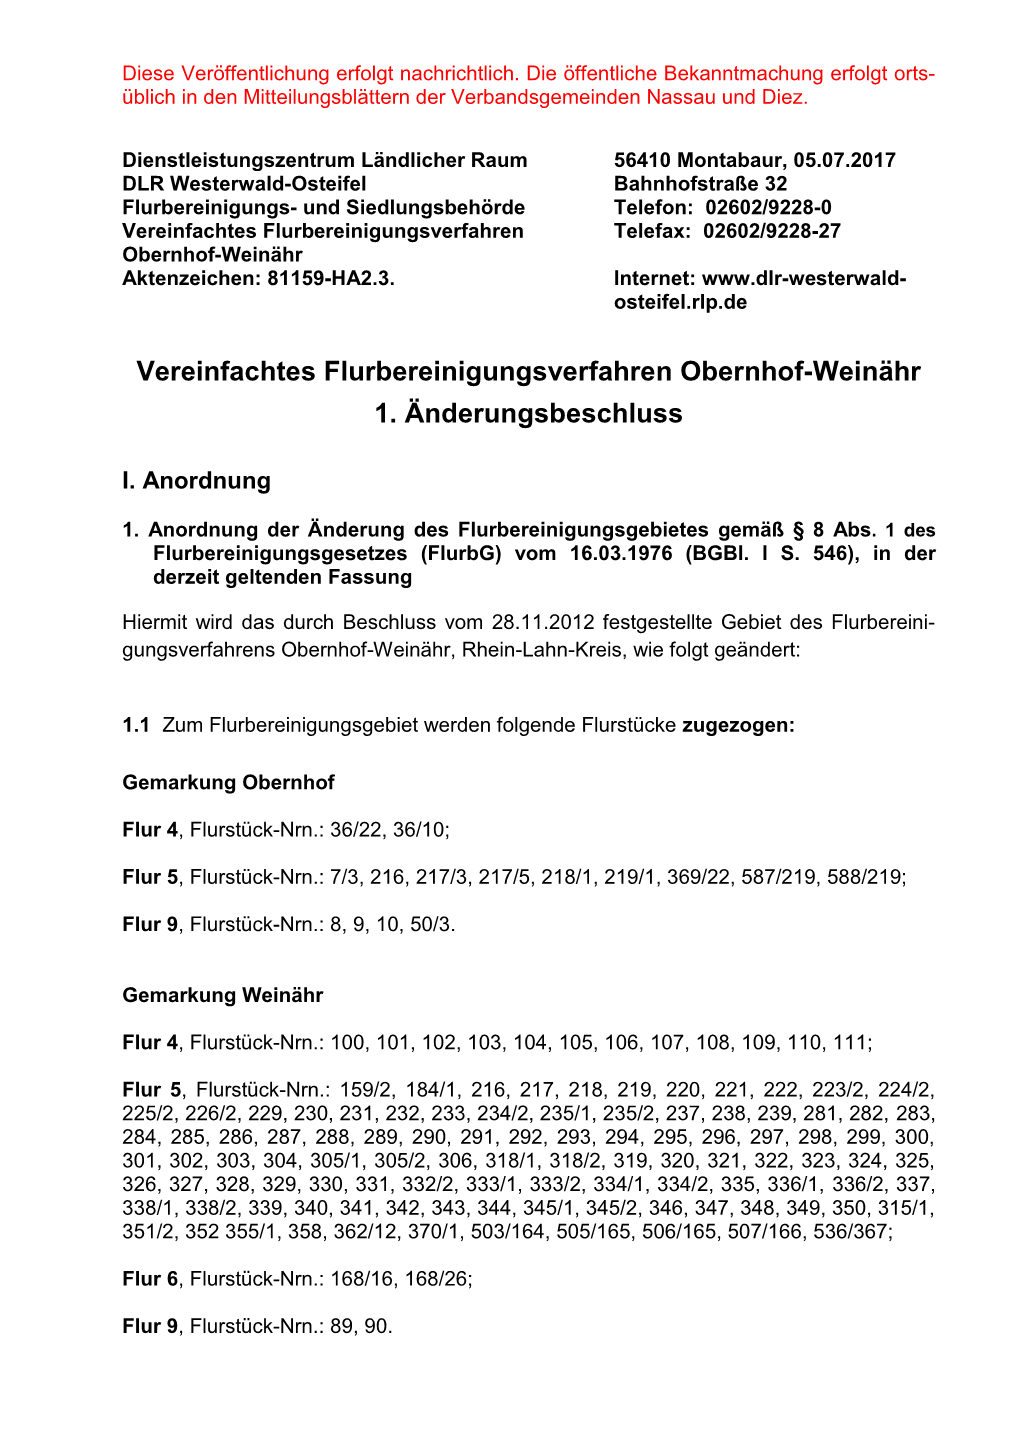 Vereinfachtes Flurbereinigungsverfahren Telefax: 02602/9228-27 Obernhof-Weinähr Aktenzeichen: 81159-HA2.3